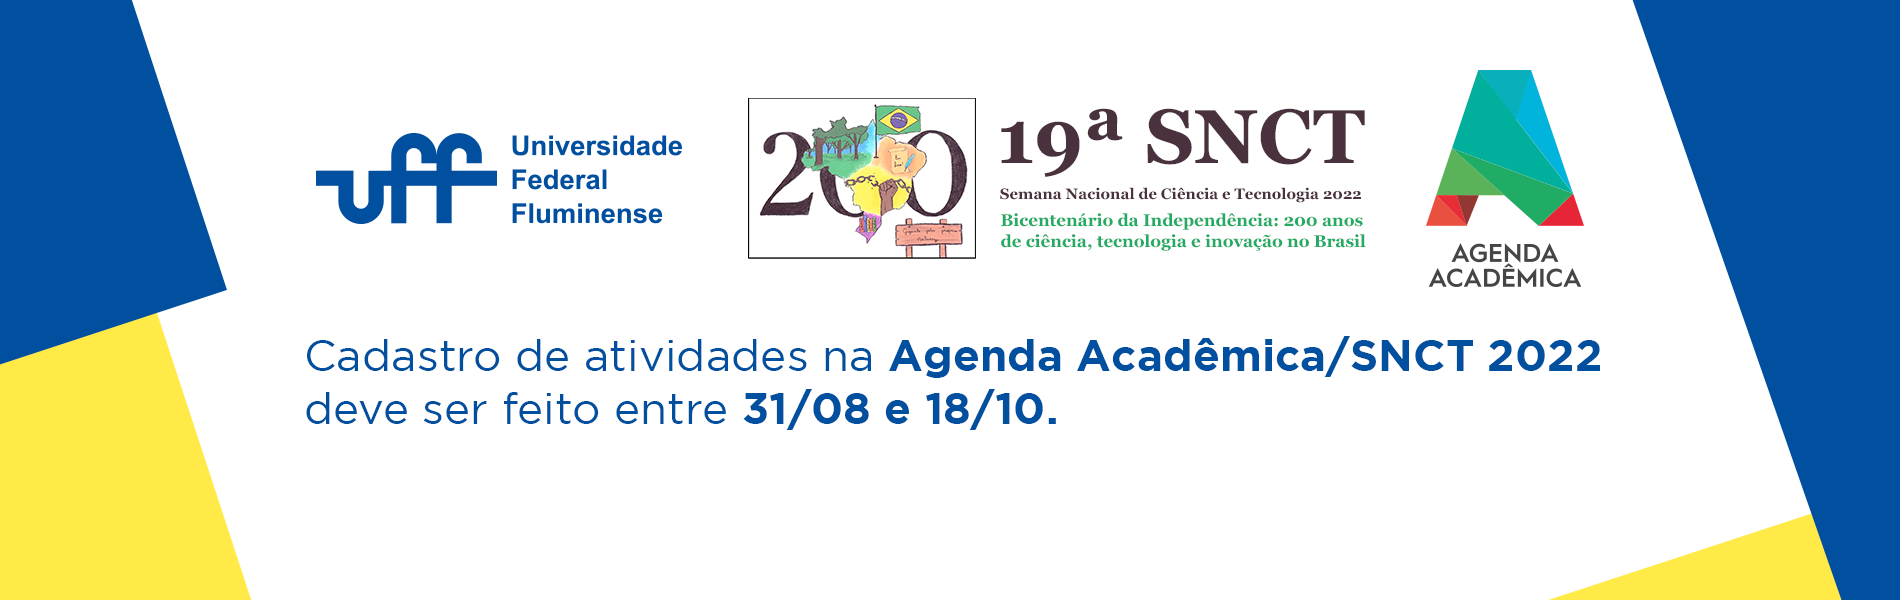 Agenda Acadêmica 2022: abertas as inscrições de atividades!